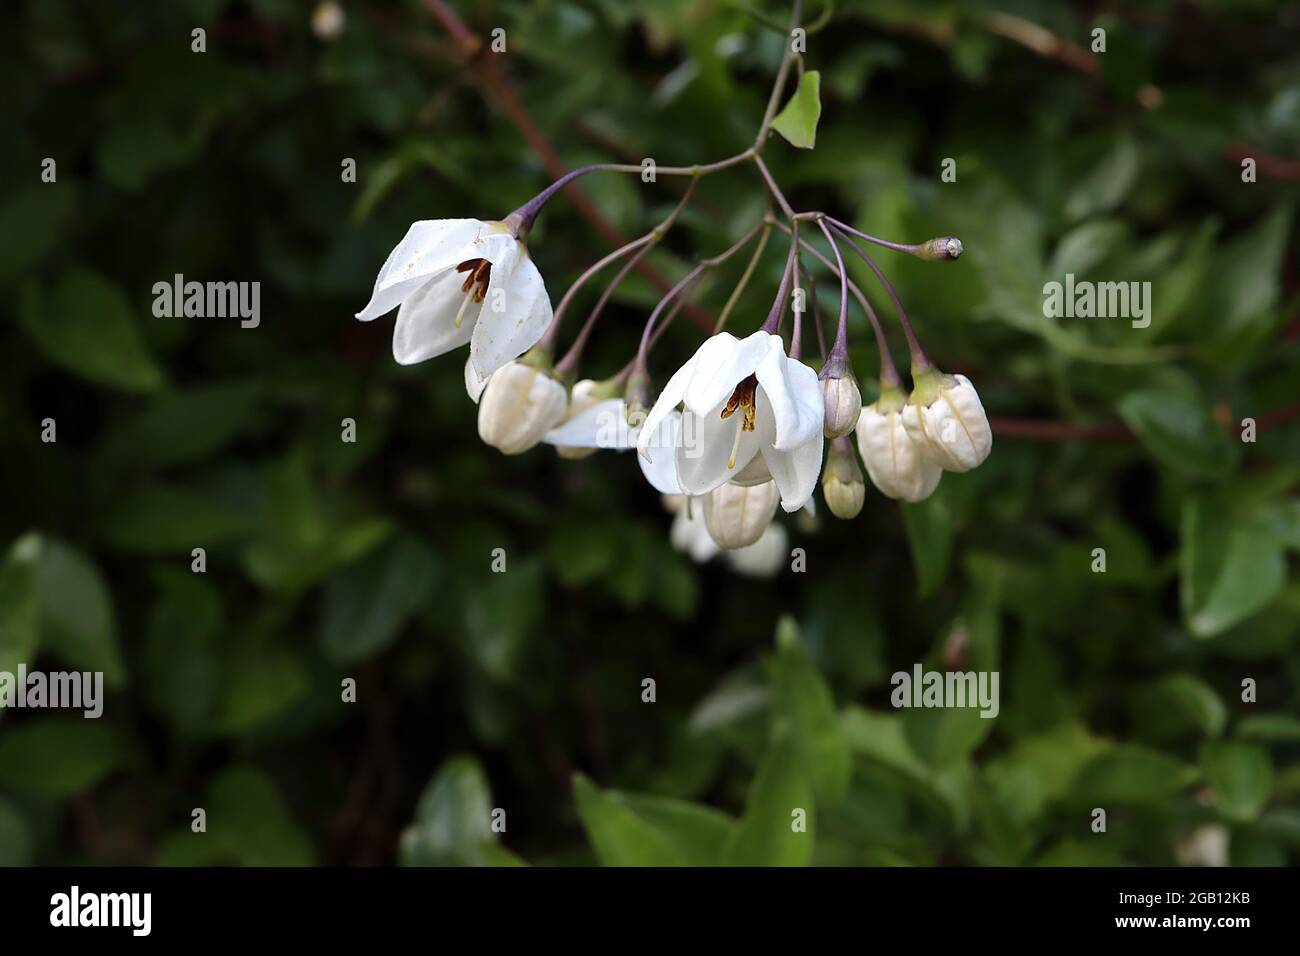 Solanum laxum Album weiße Kartoffelrebe - auftauchende weiße sternförmige Blüten in offenen Trauben, Juni, England, Großbritannien Stockfoto